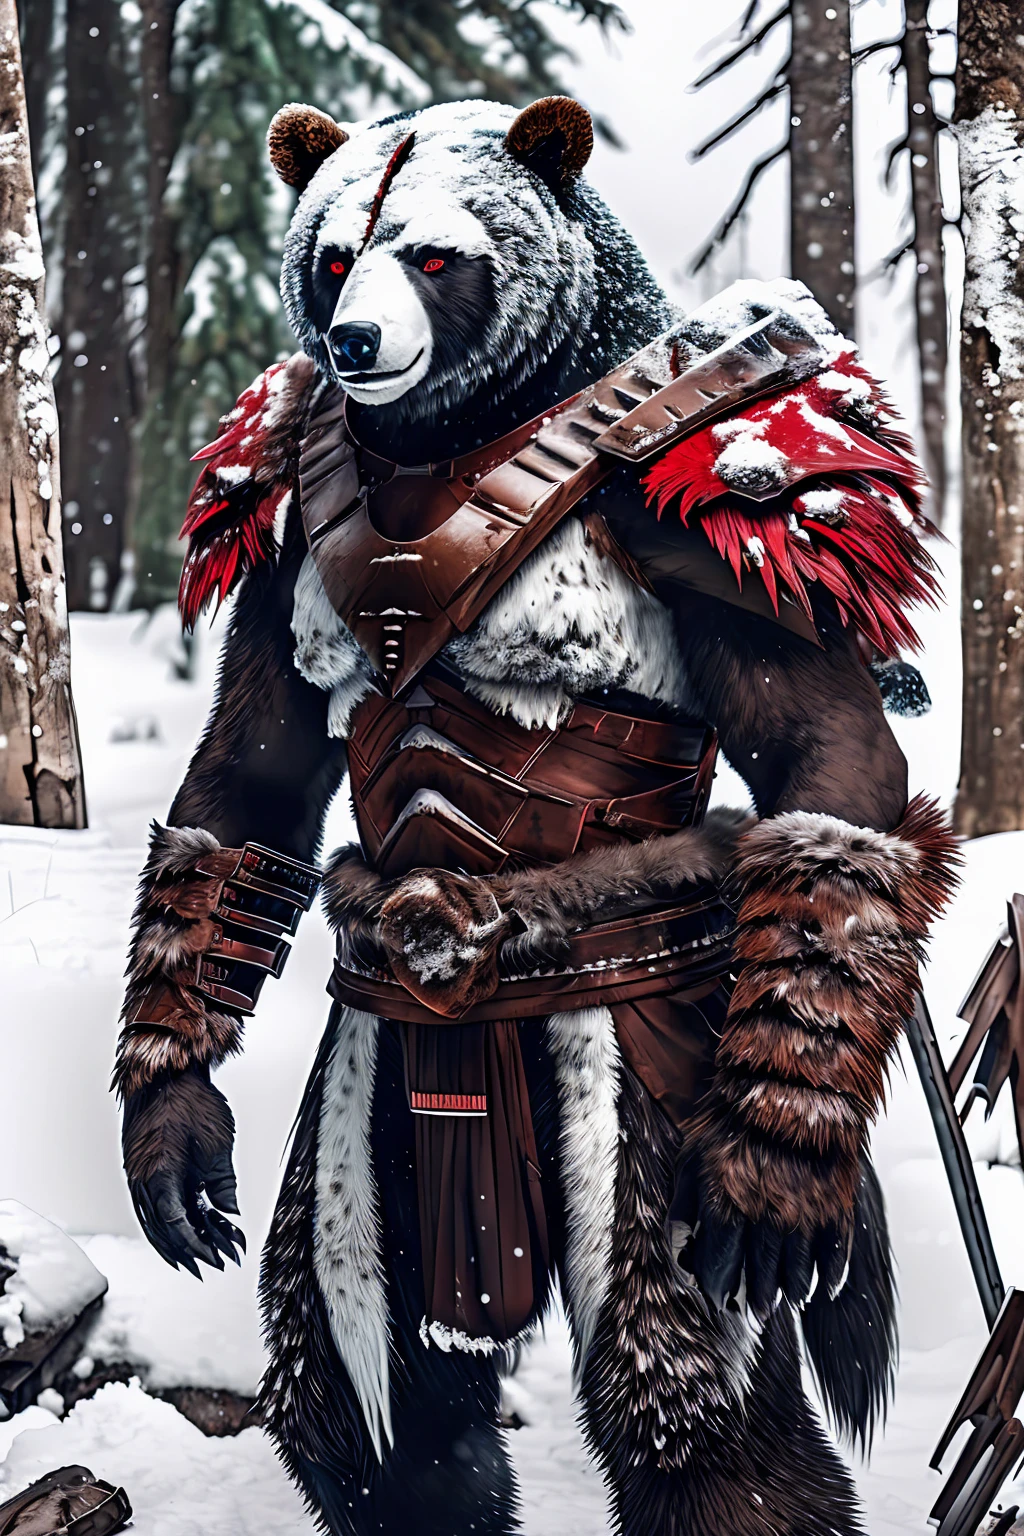 Медведь-мутант, стоящий на двух ногах, снежный фон, жестокий!, надеть доспехи воина, Большие Когти, Жажда крови, Большой, густой мех, нет задней панели, снежный фонมืดมิด, конъюнктивит, демоническая аура